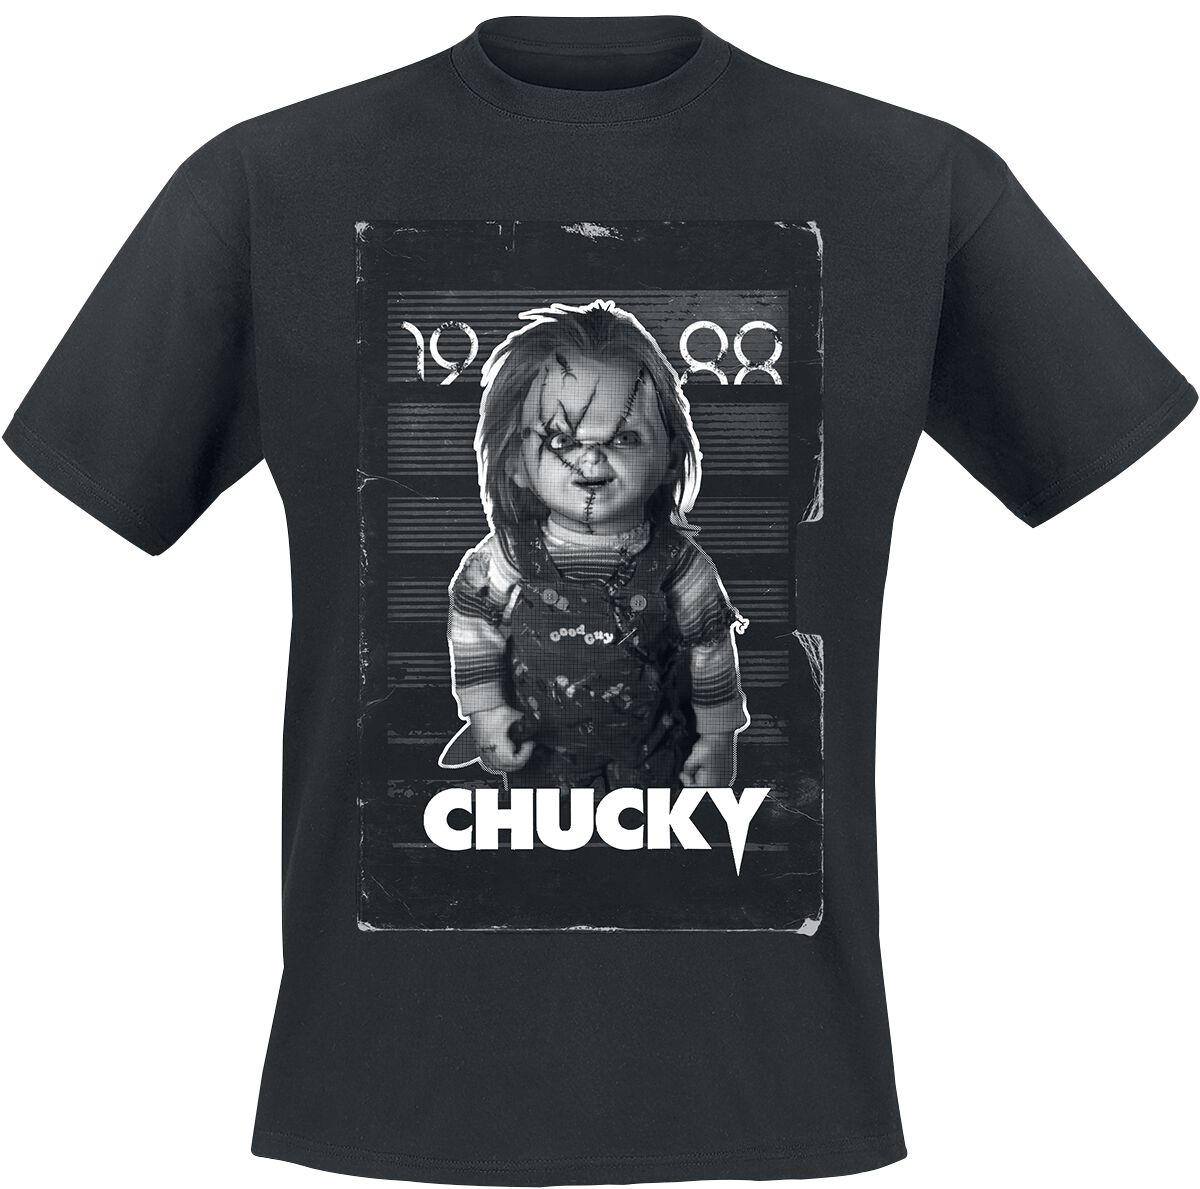 Chucky T-Shirt - VHS Cover - S bis L - für Männer - Größe S - schwarz  - Lizenzierter Fanartikel